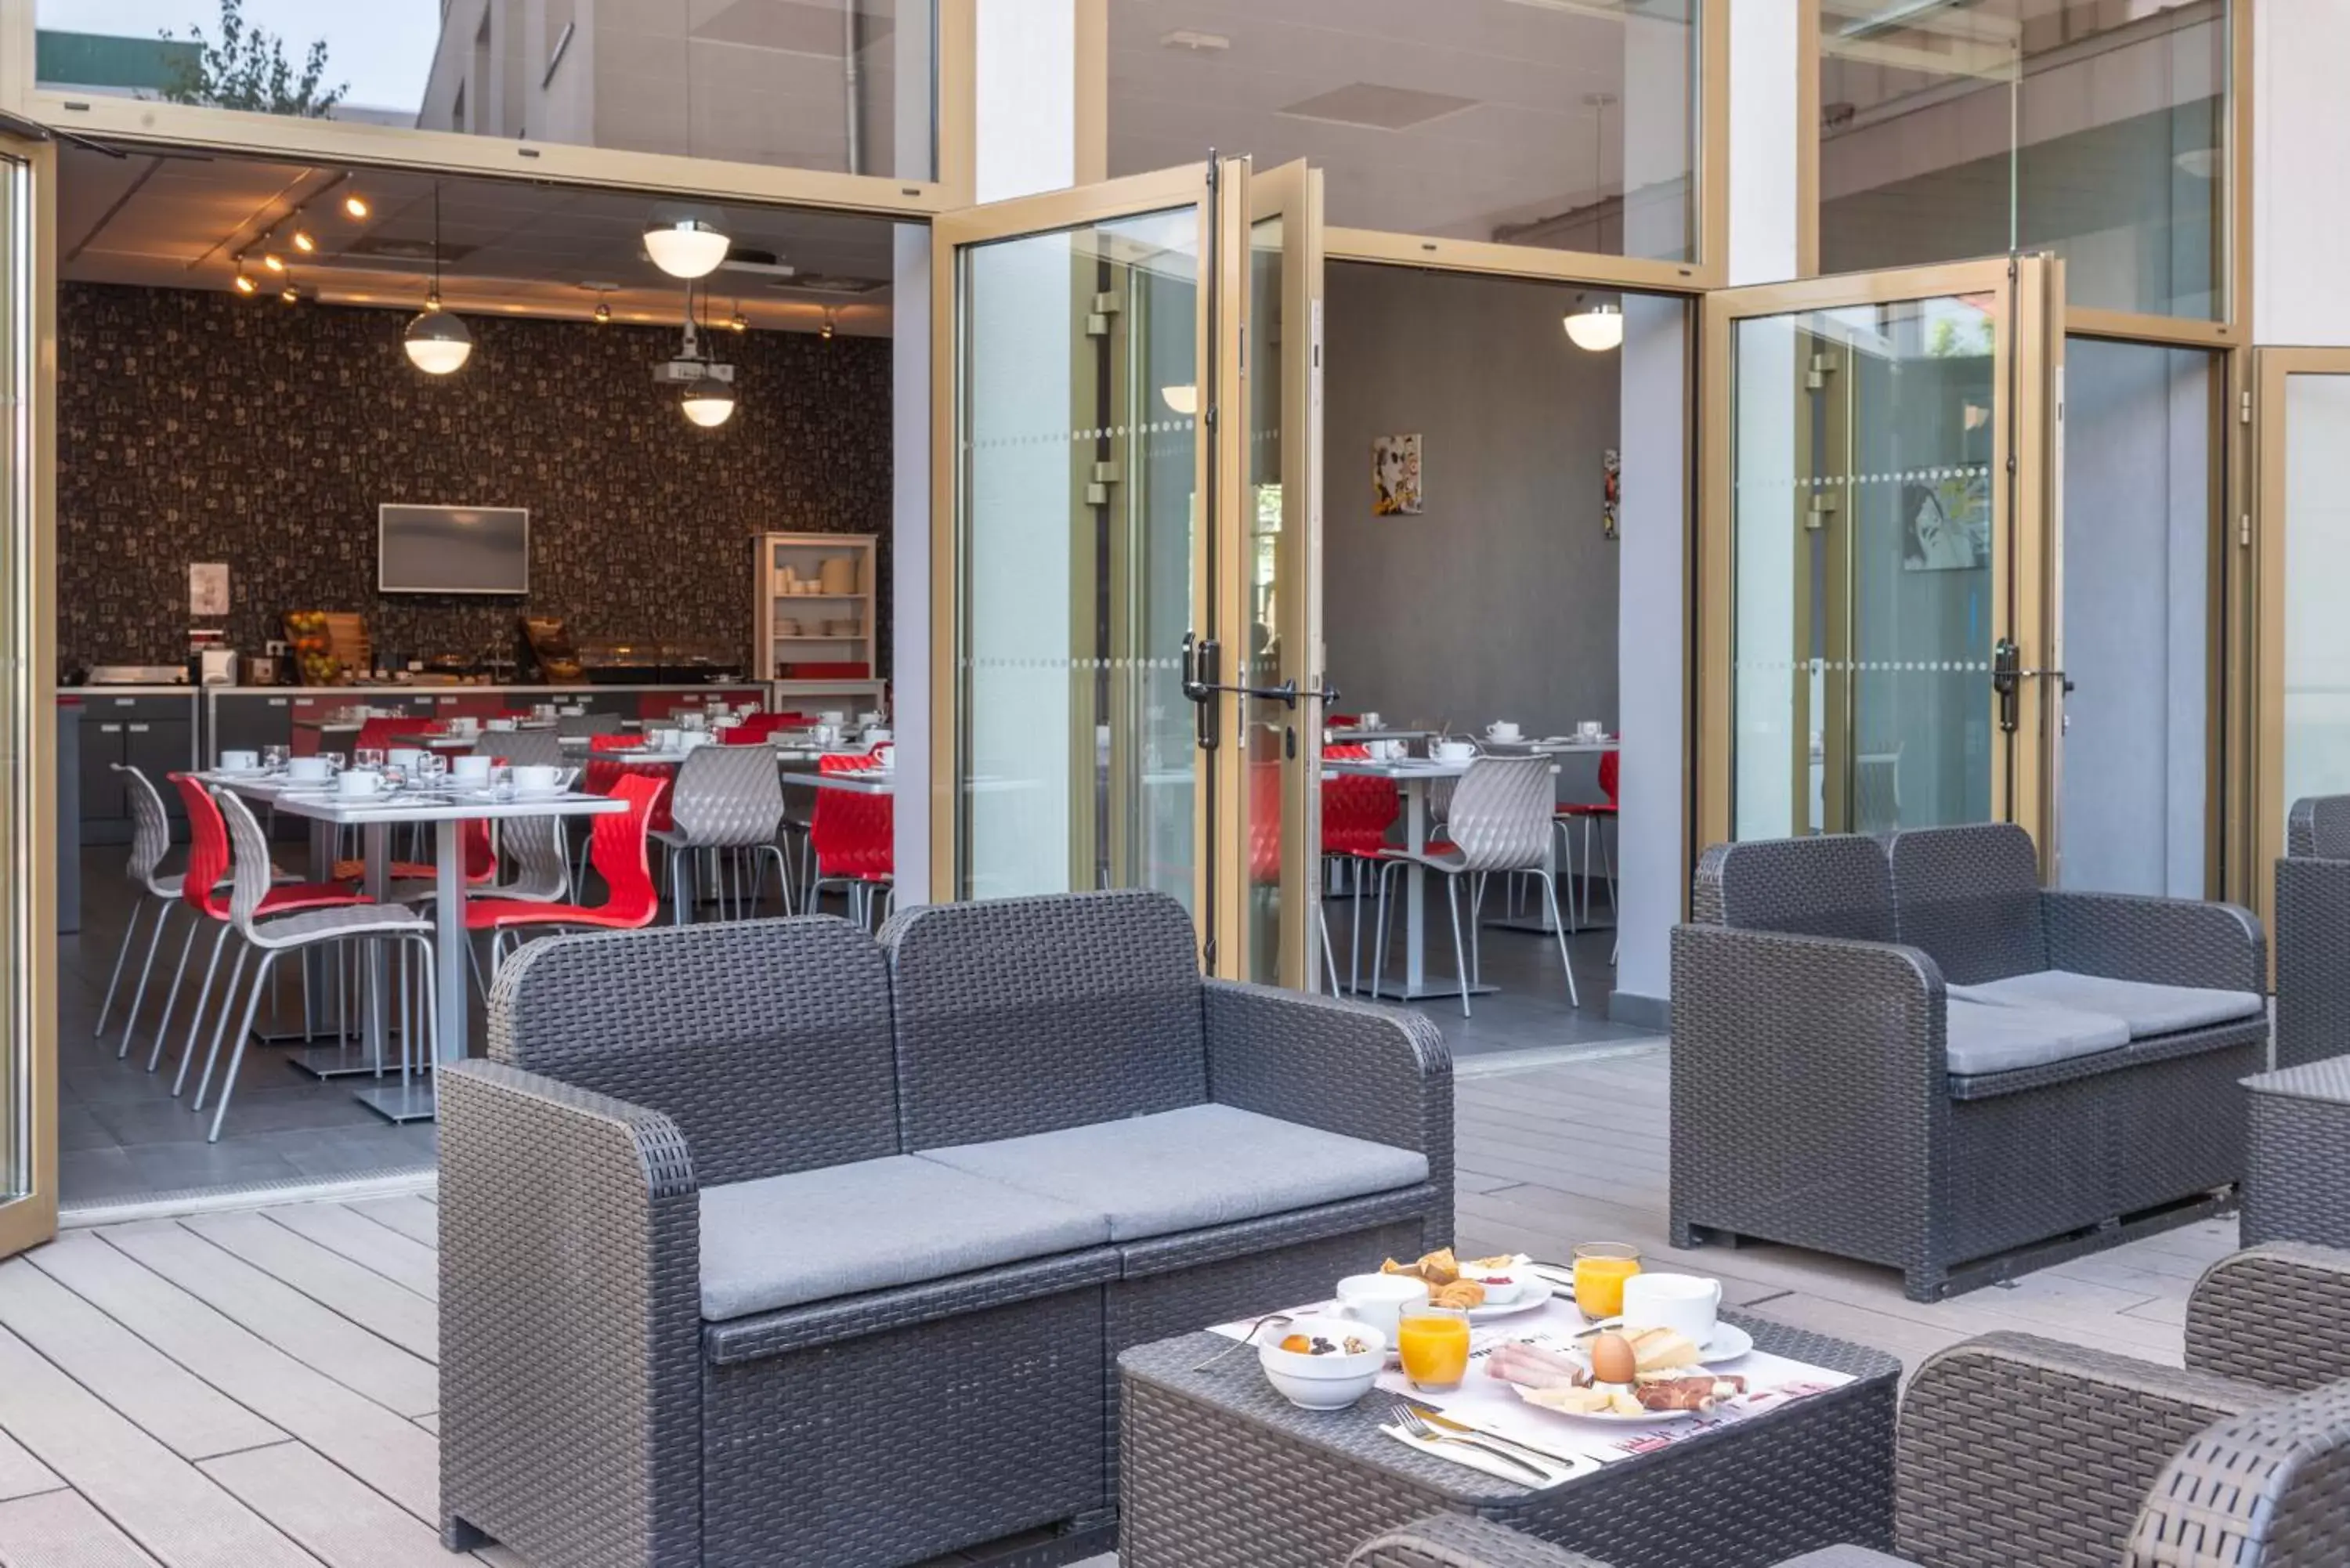 Balcony/Terrace, Restaurant/Places to Eat in The Originals Résidence, Grenoble Université